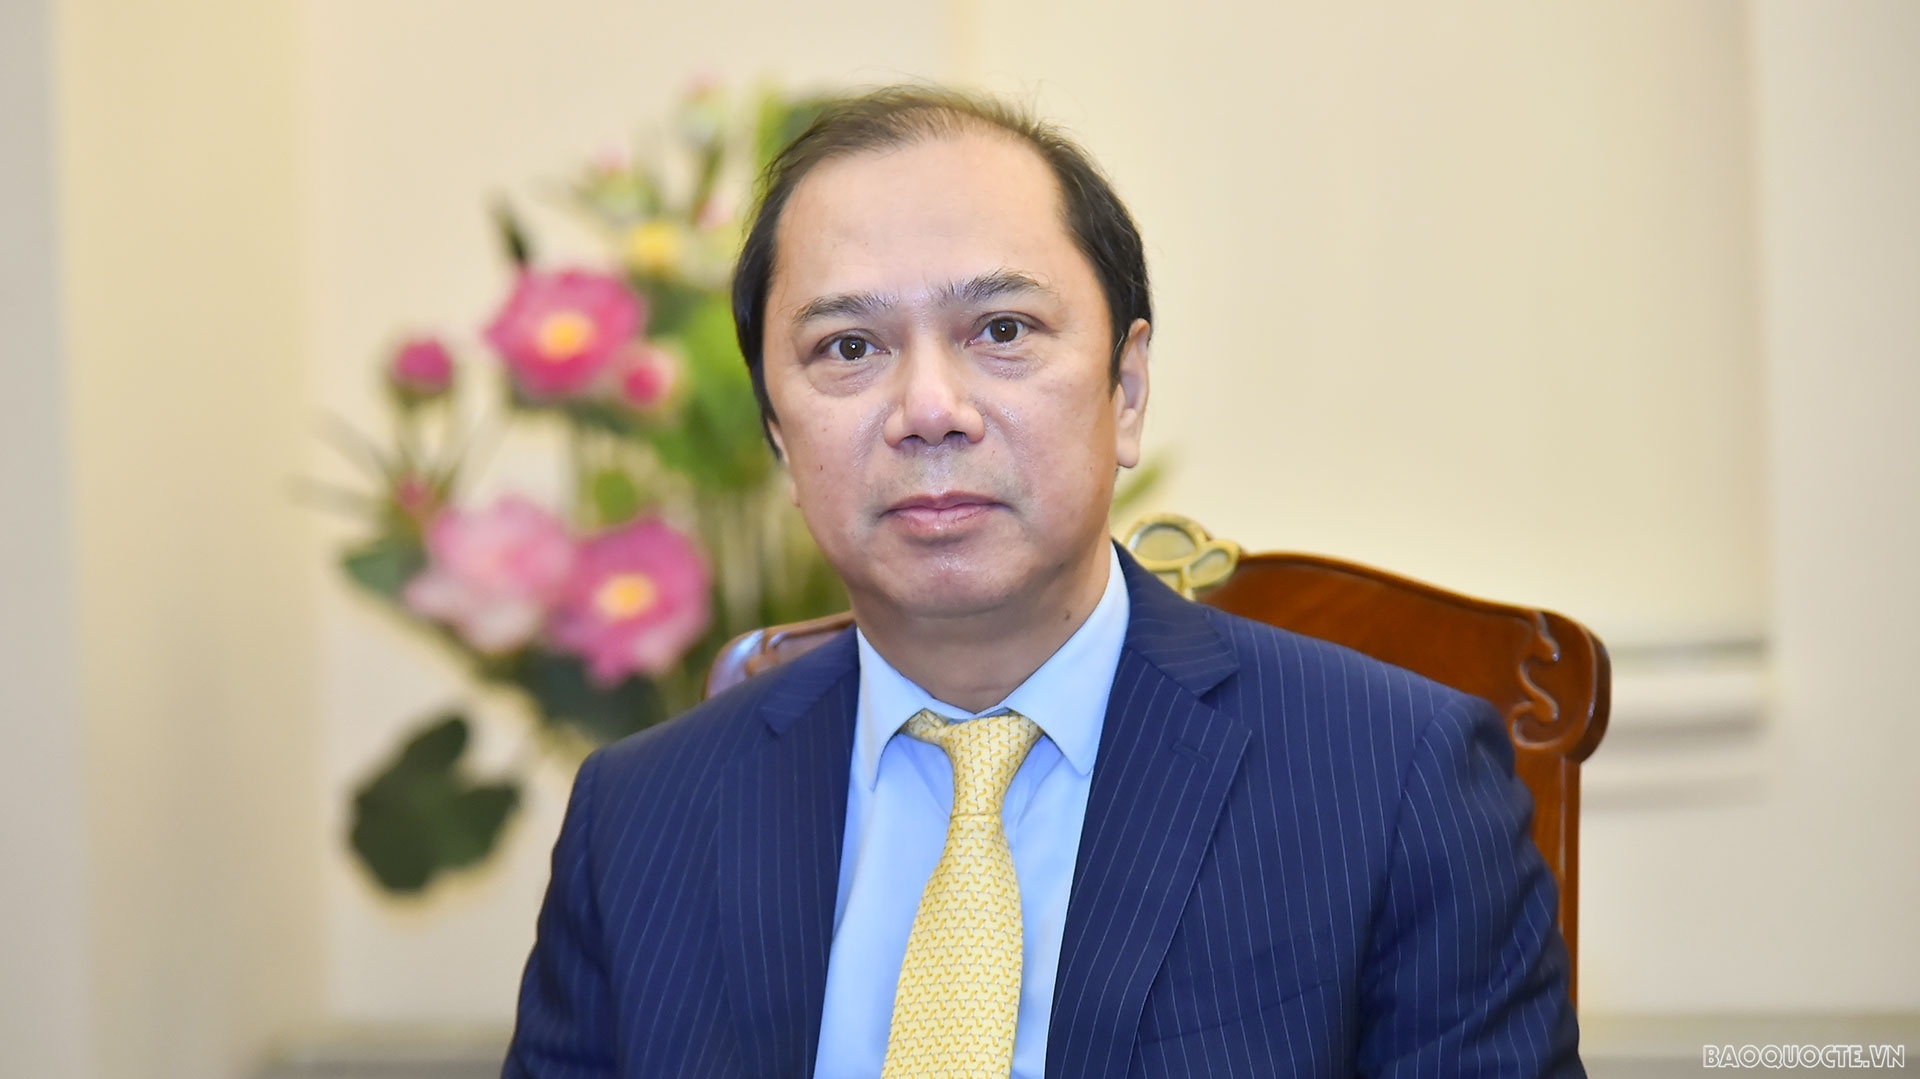 Chủ tịch nước Nguyễn Xuân Phúc thăm Lào: Nhiều kết quả cụ thể, thực chất và toàn diện